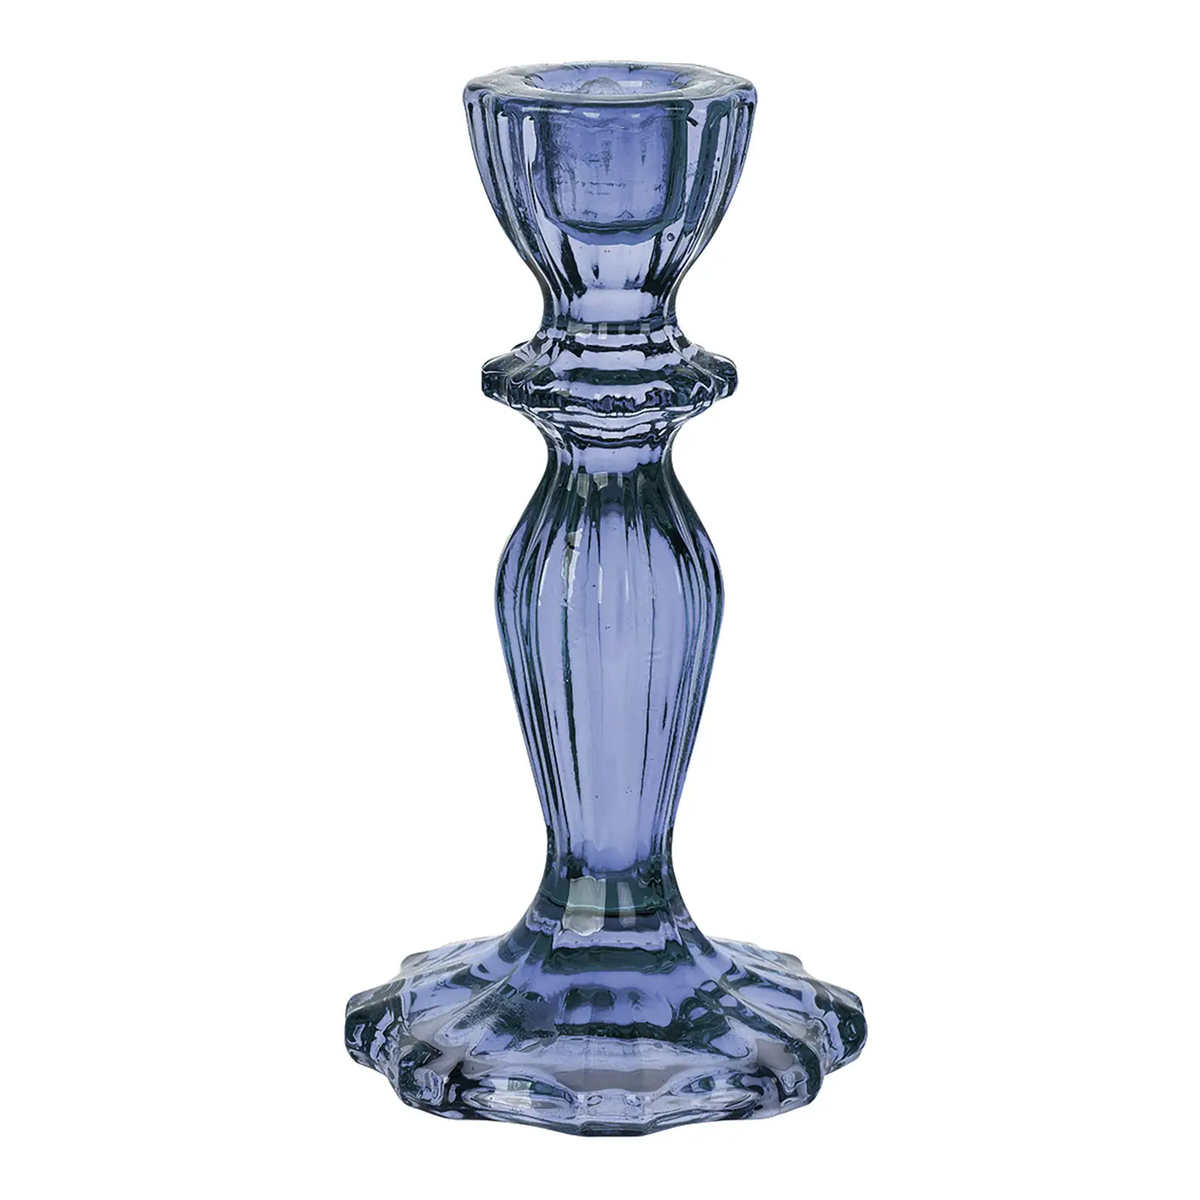 Vintage Glass Candlestick Holder - Navy